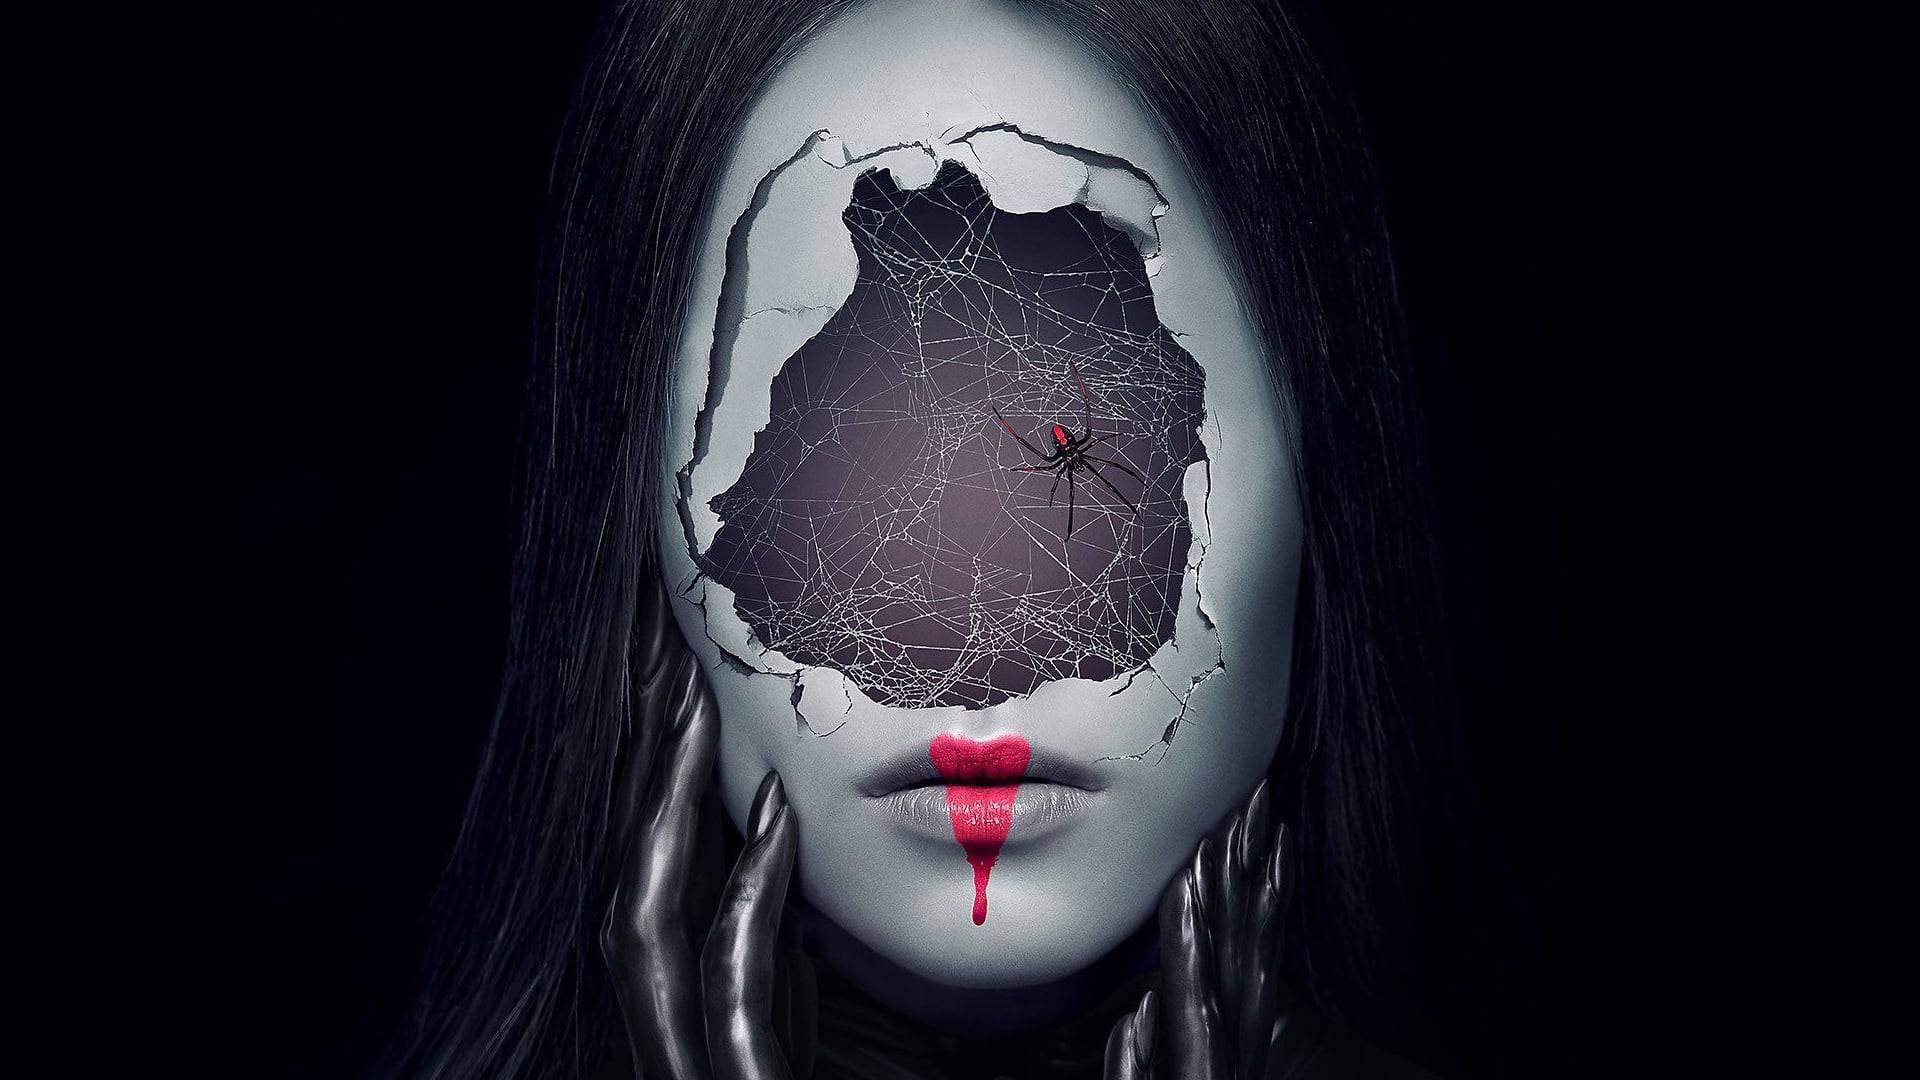 FX renova ‘American Horror Stories’  para sua 2ª temporada e anuncia novos projetos